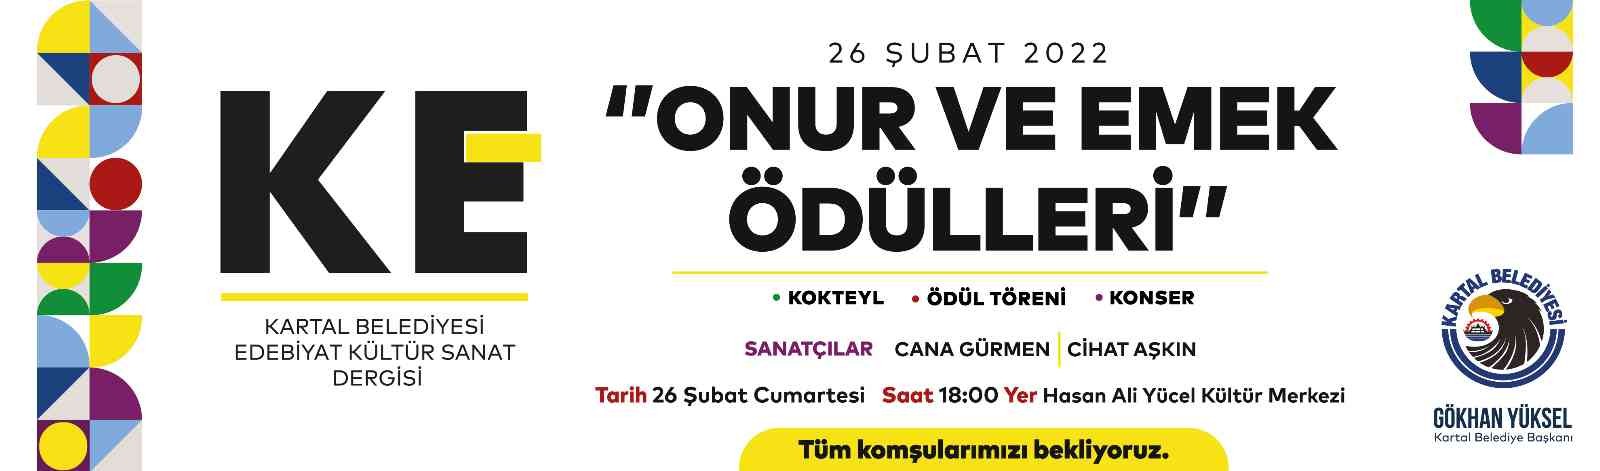 “KE” 3. yılını ‘Onur ve Emek Ödülleri’ ile taçlandırıyor #istanbul